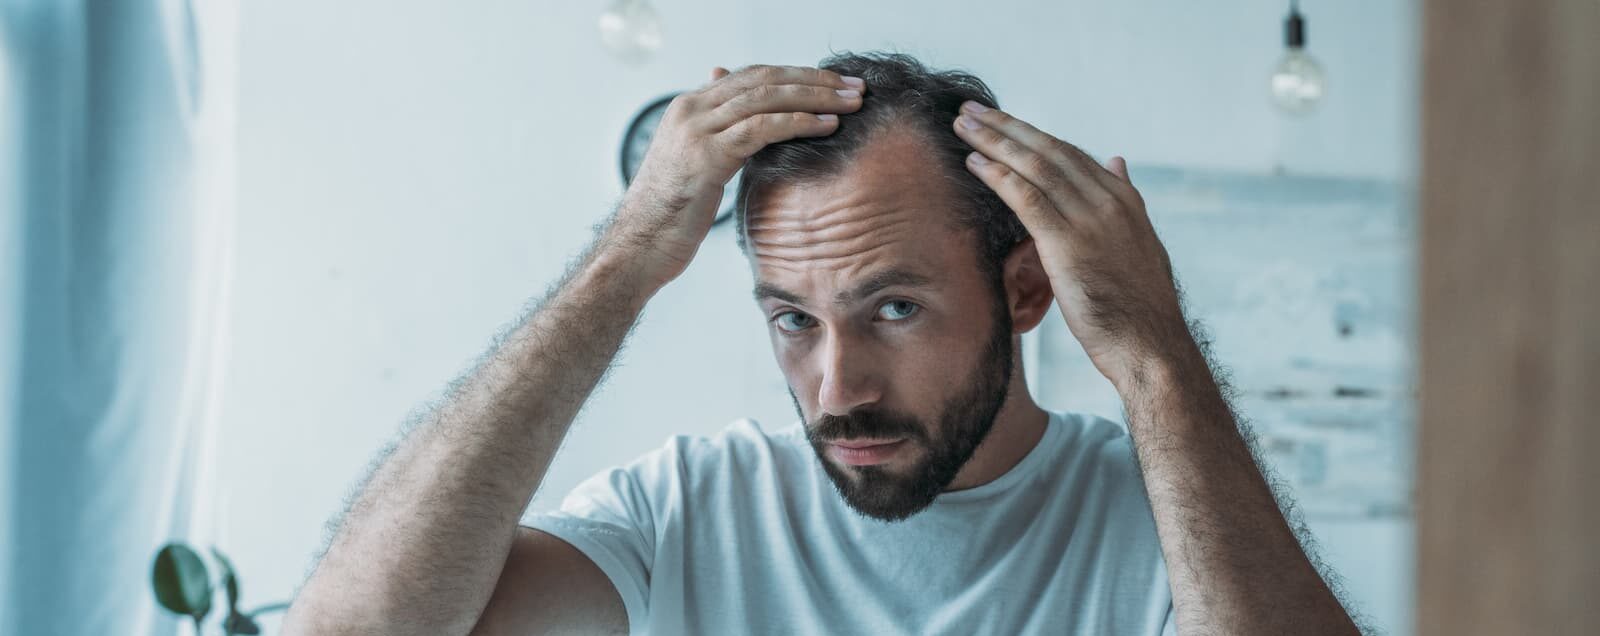 Non ignorate questi segnali: potreste soffrire di alopecia